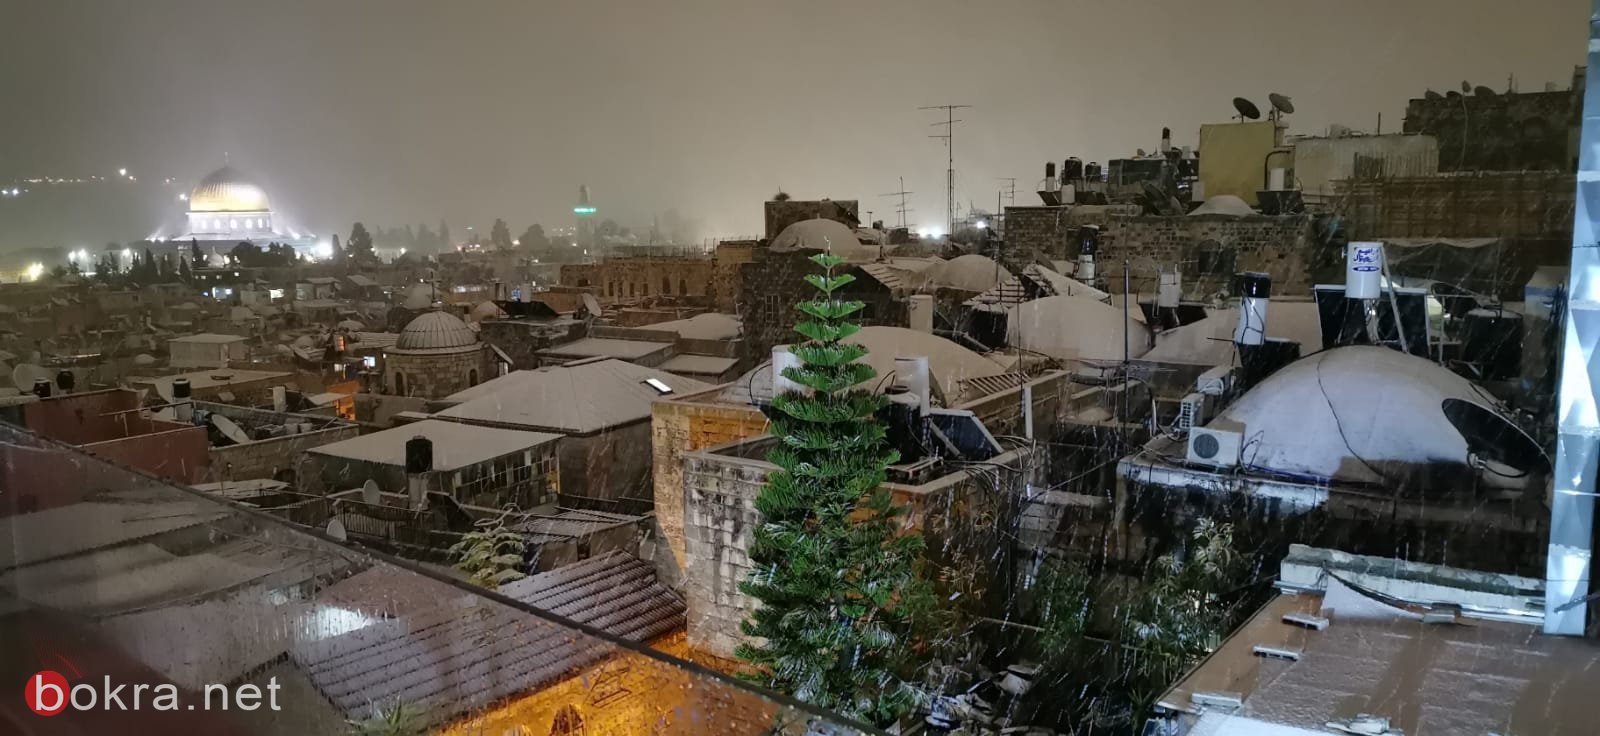 صور رائعة من القدس .. الثلوج تغطي البلدة القديمة-4